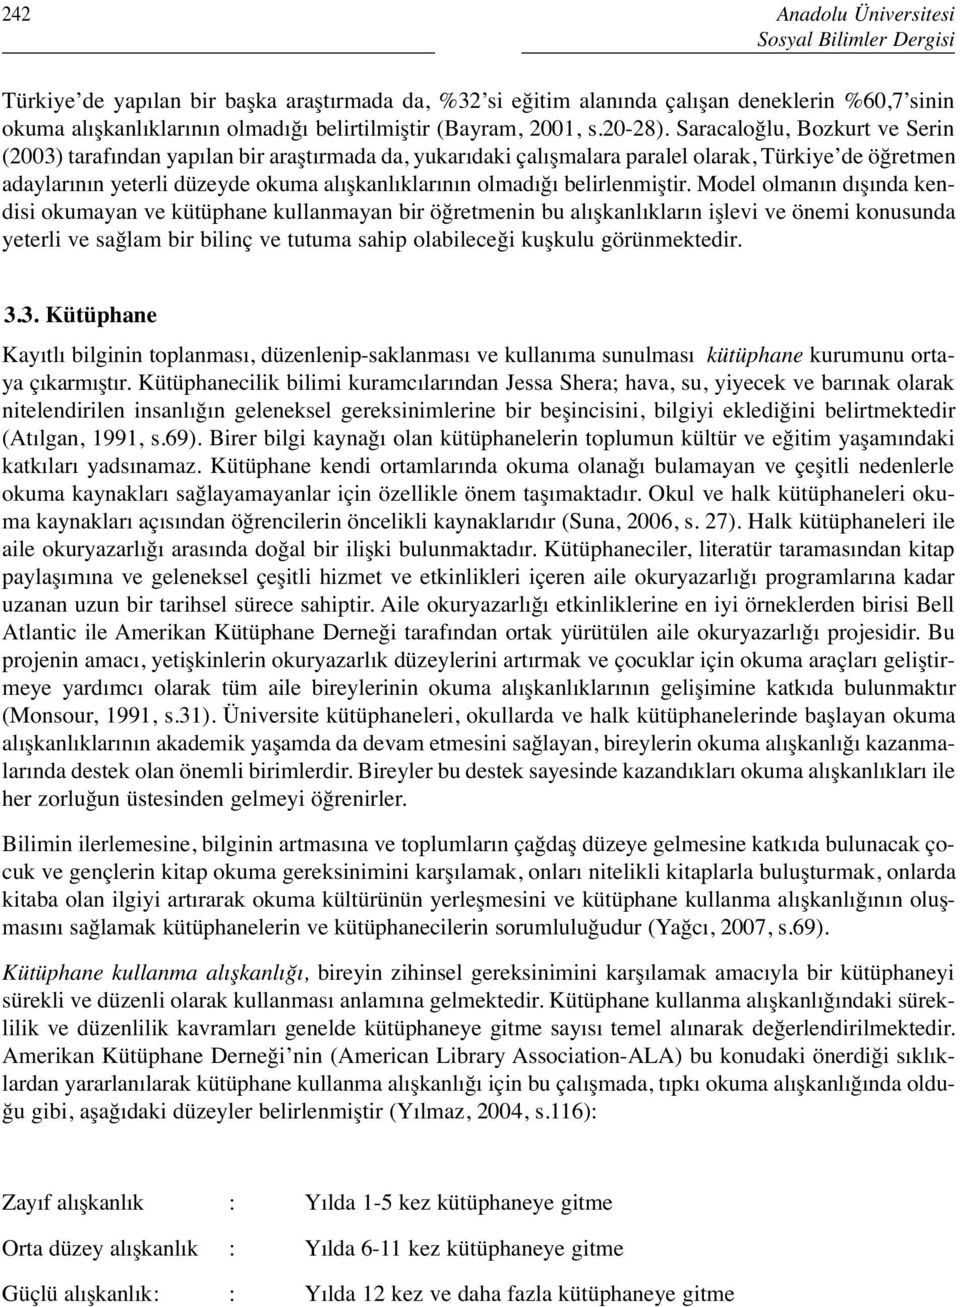 Saracaloğlu, Bozkurt ve Serin (2003) tarafından yapılan bir araştırmada da, yukarıdaki çalışmalara paralel olarak, Türkiye de öğretmen adaylarının yeterli düzeyde okuma alışkanlıklarının olmadığı